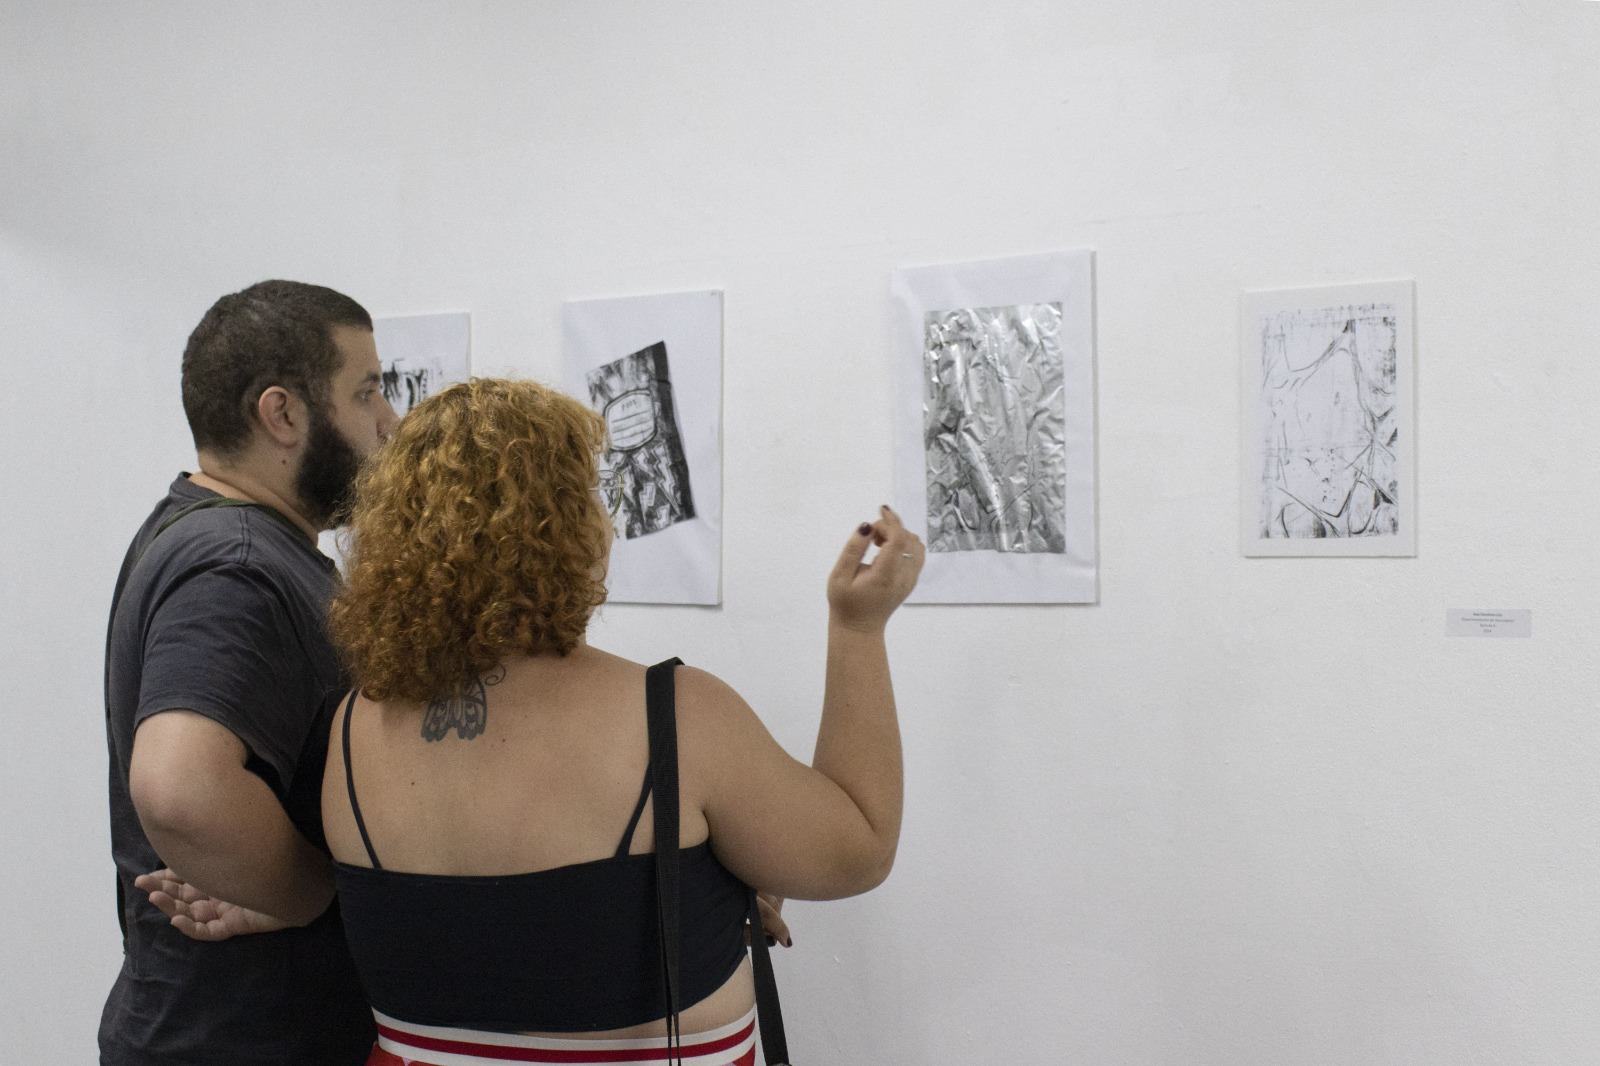 Na imagem, aparecem duas pessoas observando as obras da exposição